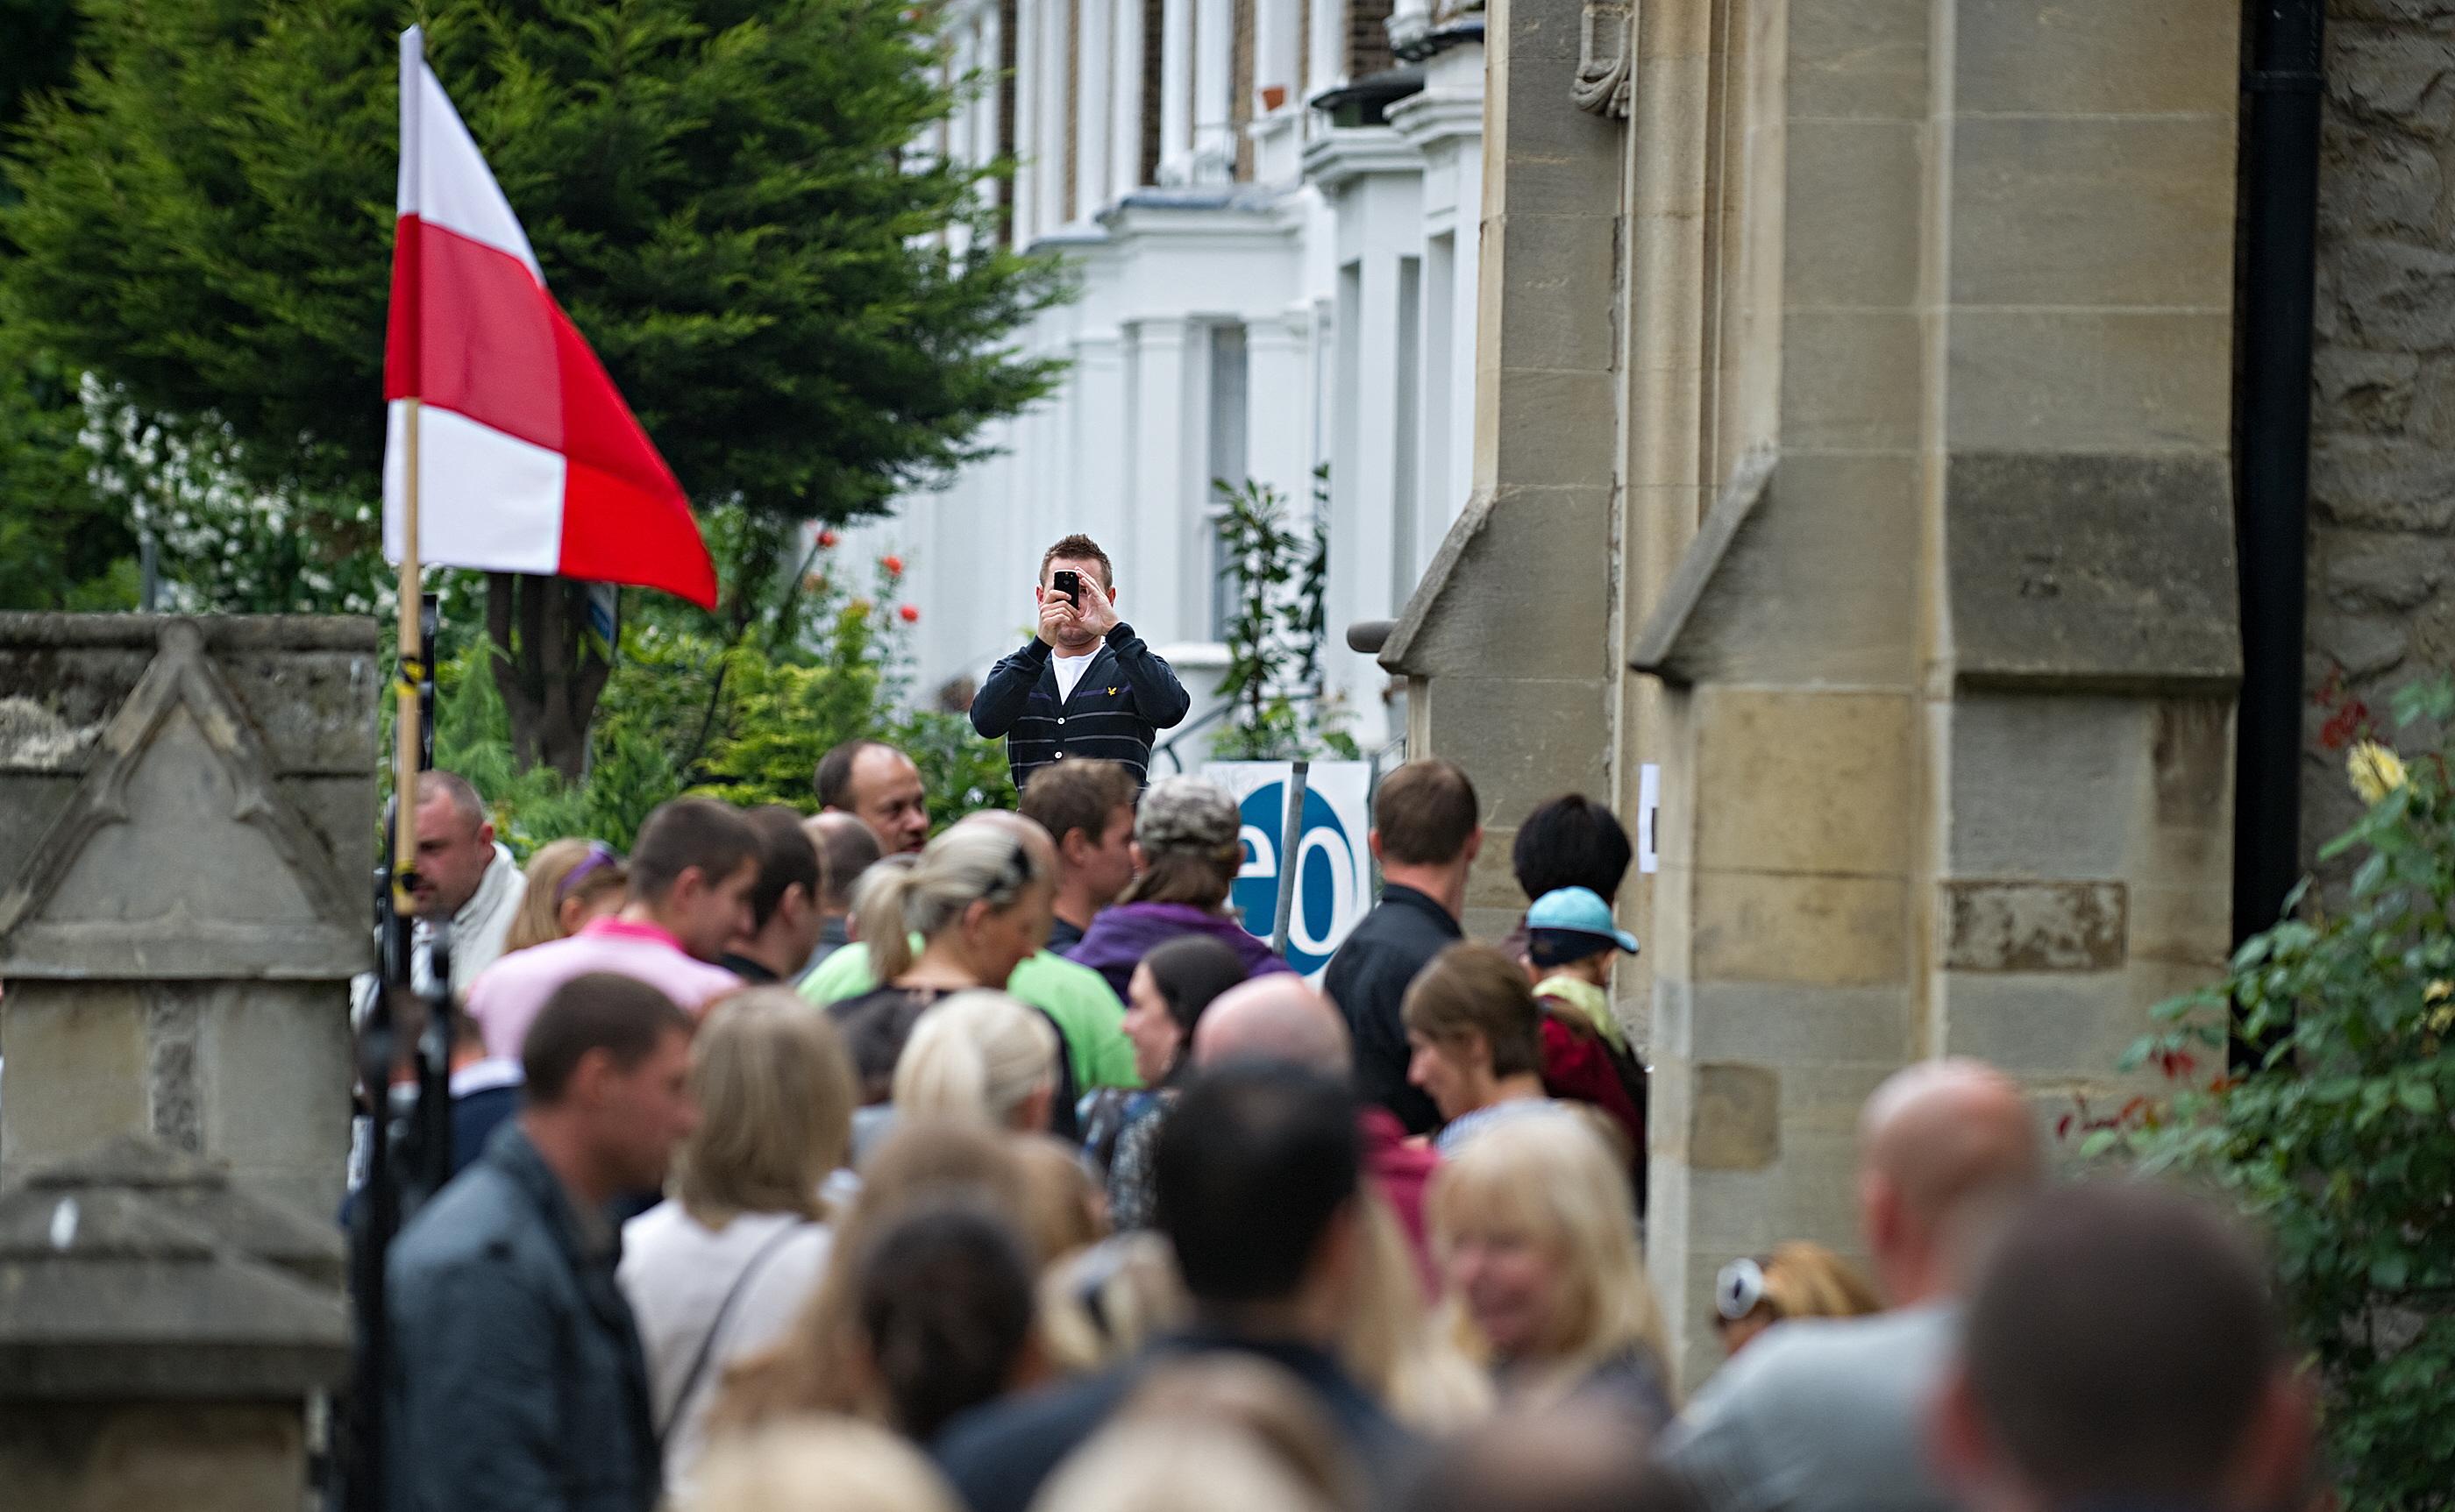 Ludzie tłoczą się przed budynkiem z polską flagą